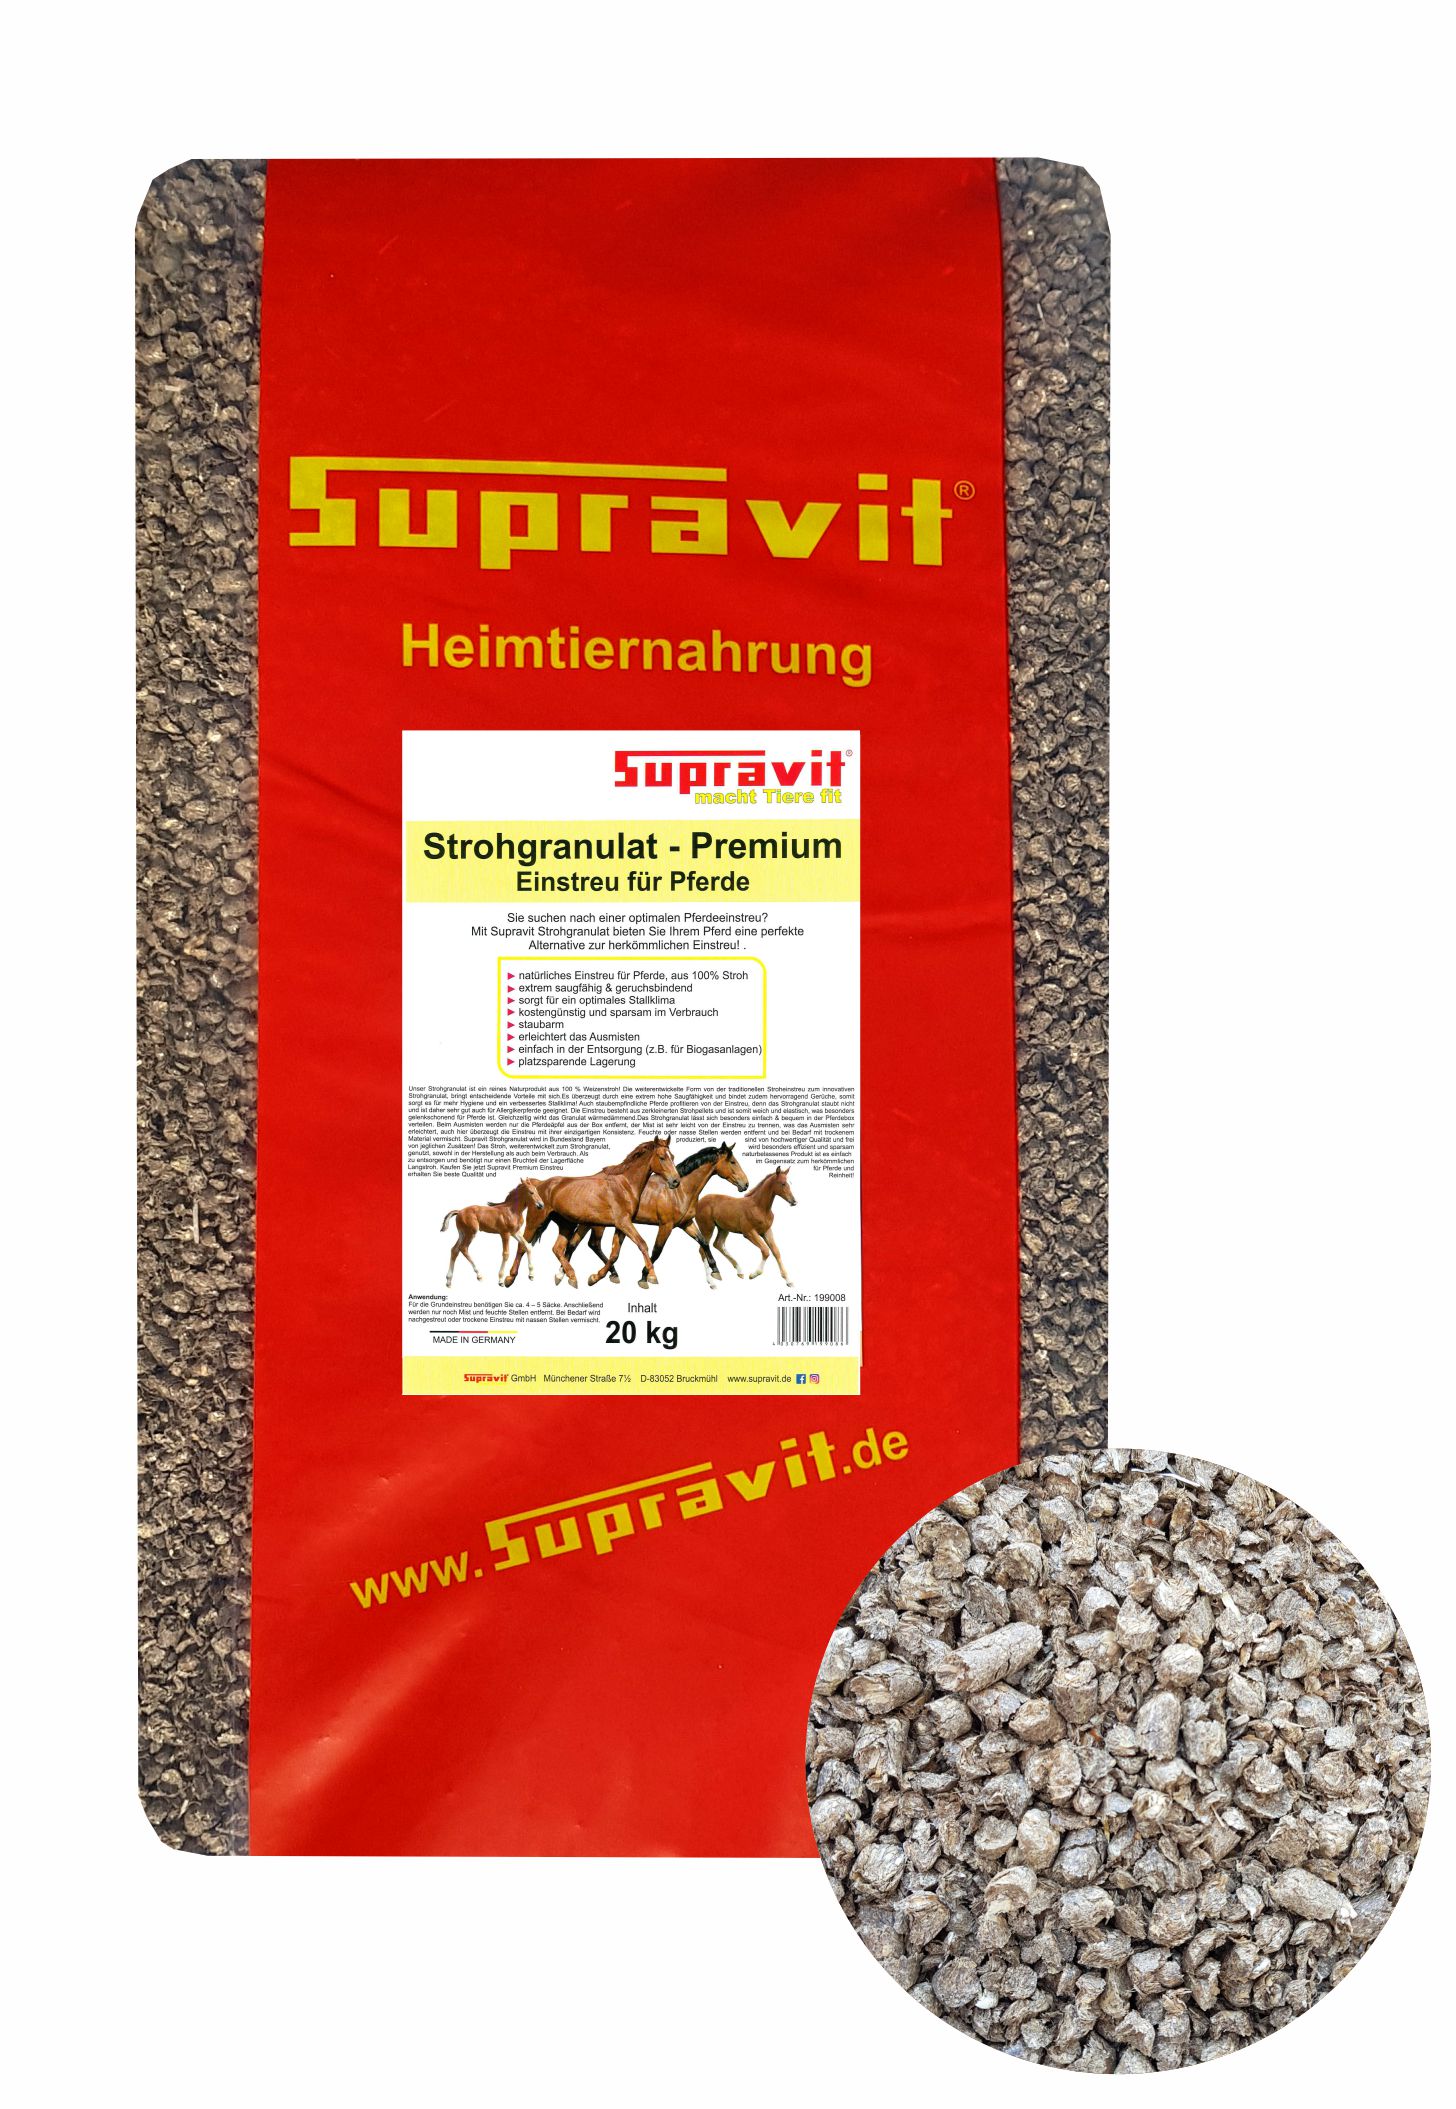 Supravit Strohgranulat - Premium Einstreu für Pferde, 1er Pack (1 x 15kg)